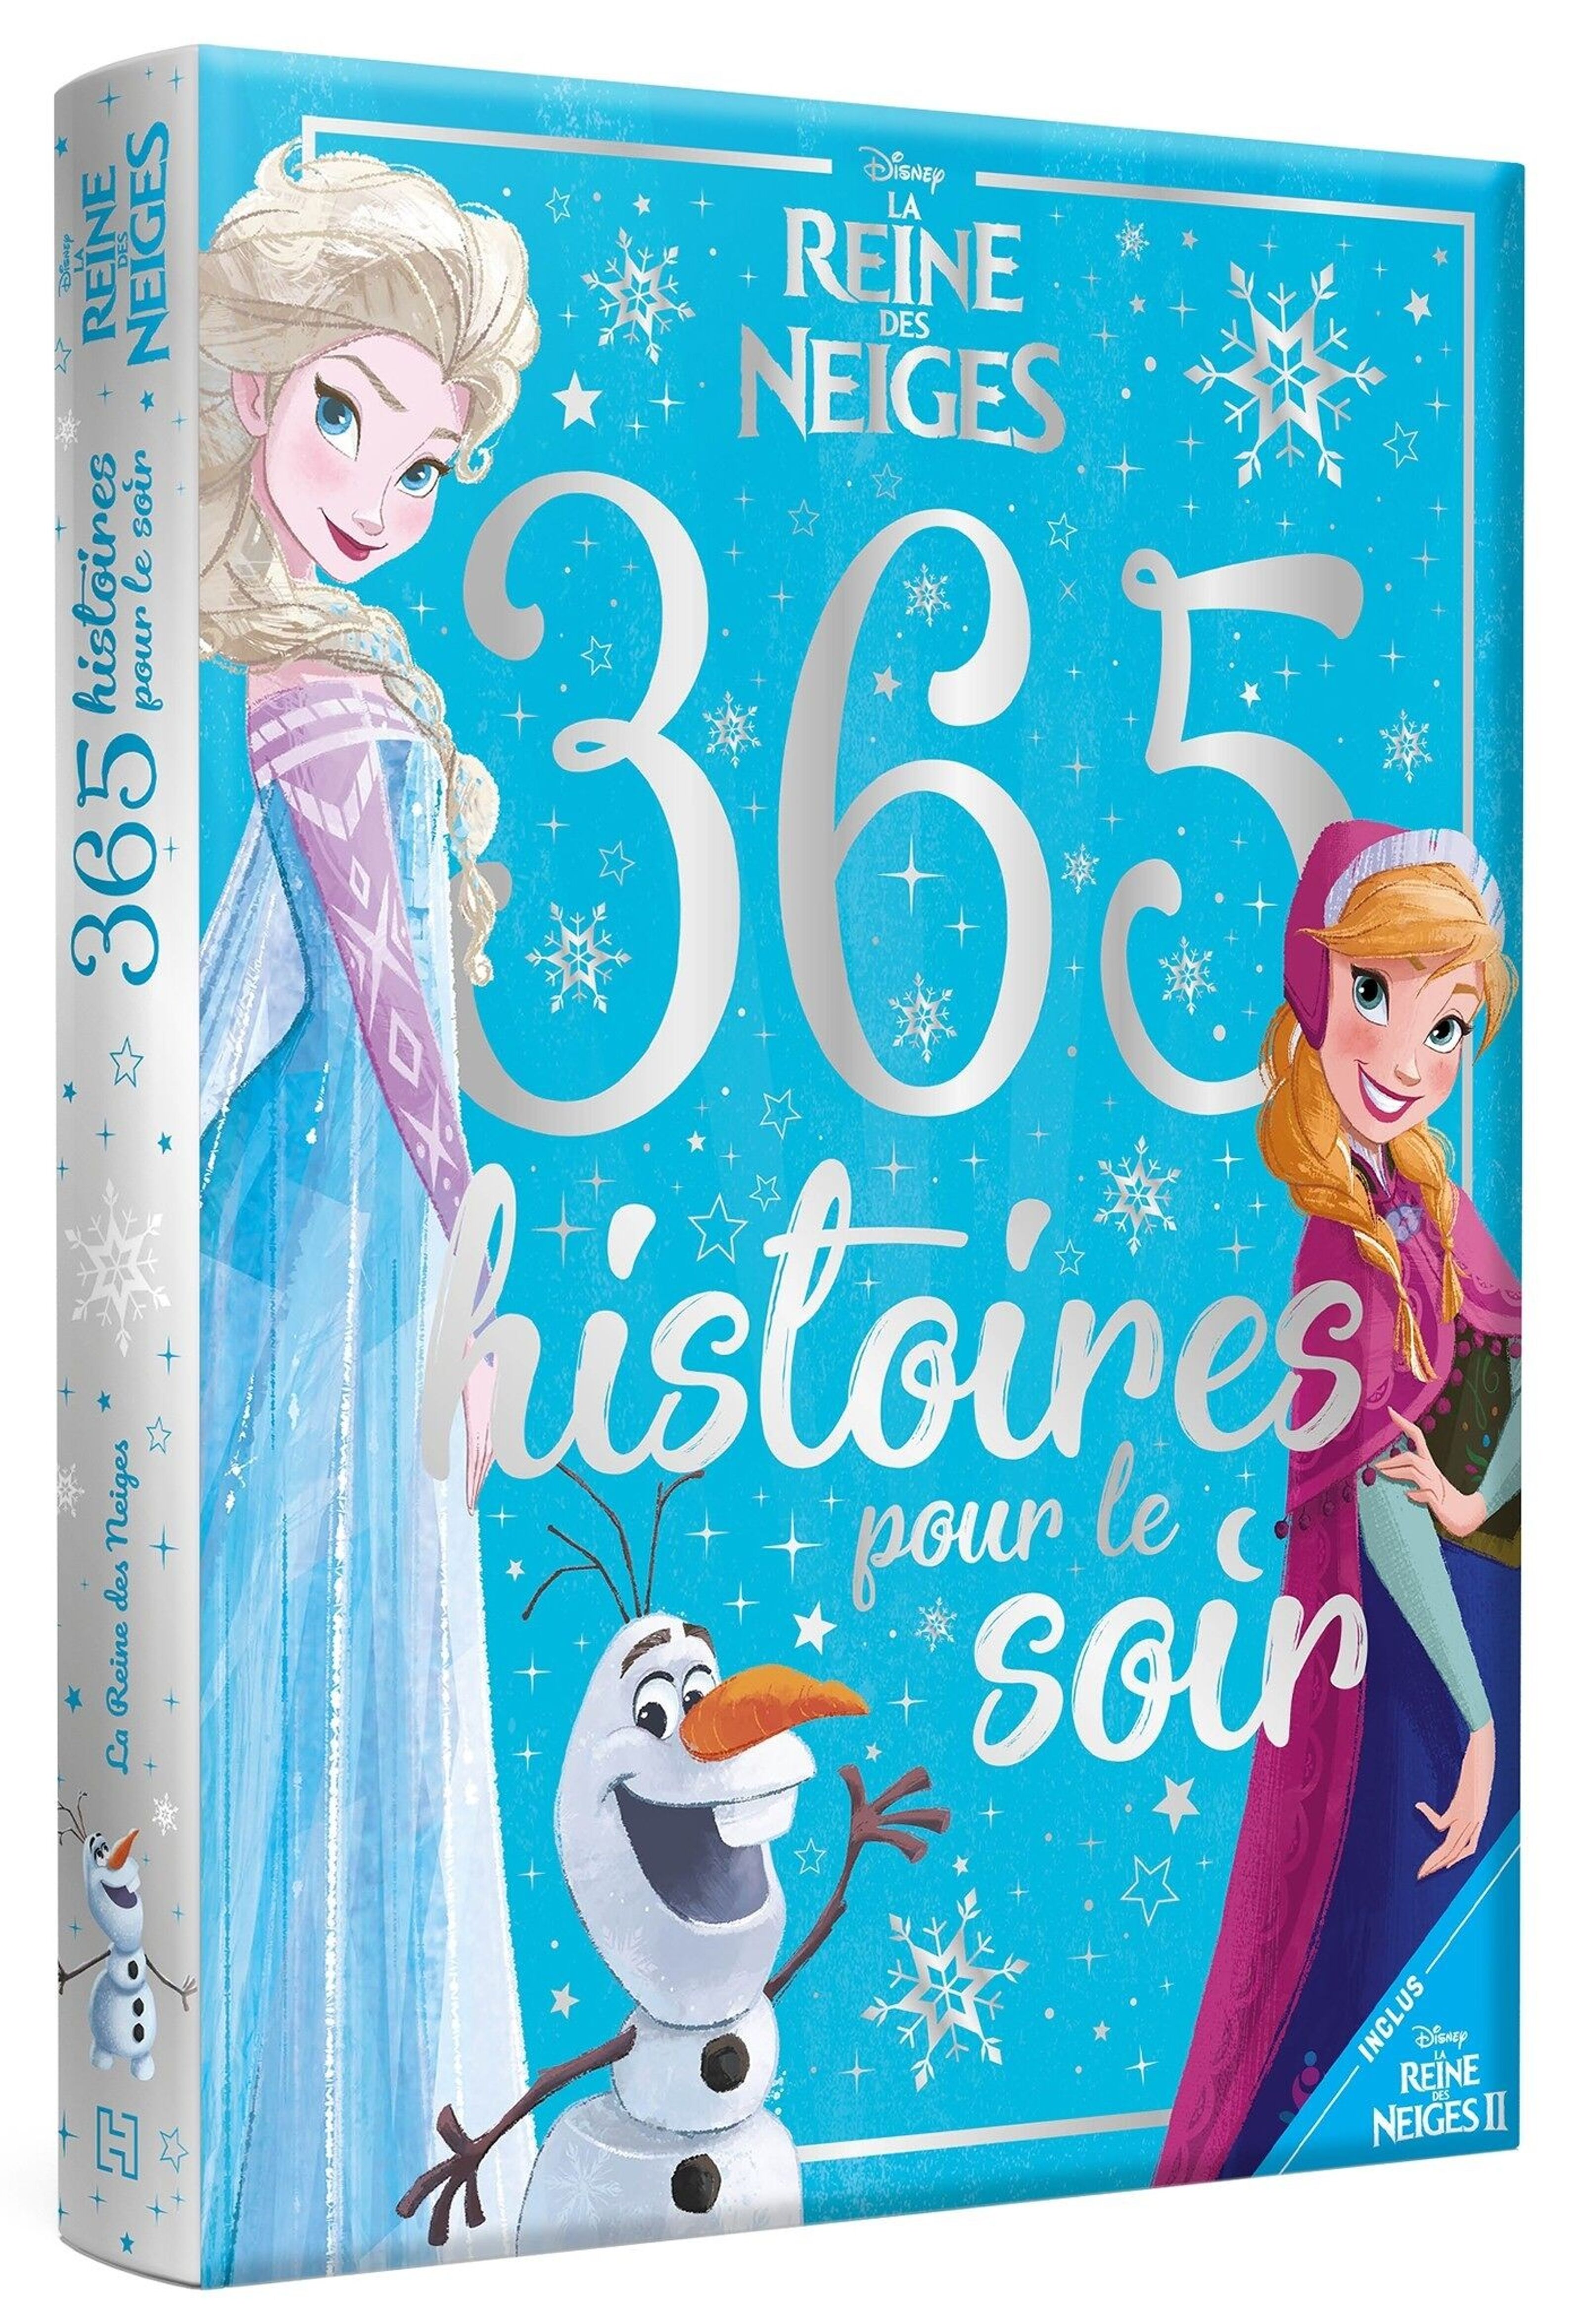 La Reine des Neiges - : LA REINE DES NEIGES - Mon Histoire à Écouter -  L'histoire du film - Livre CD - Disney